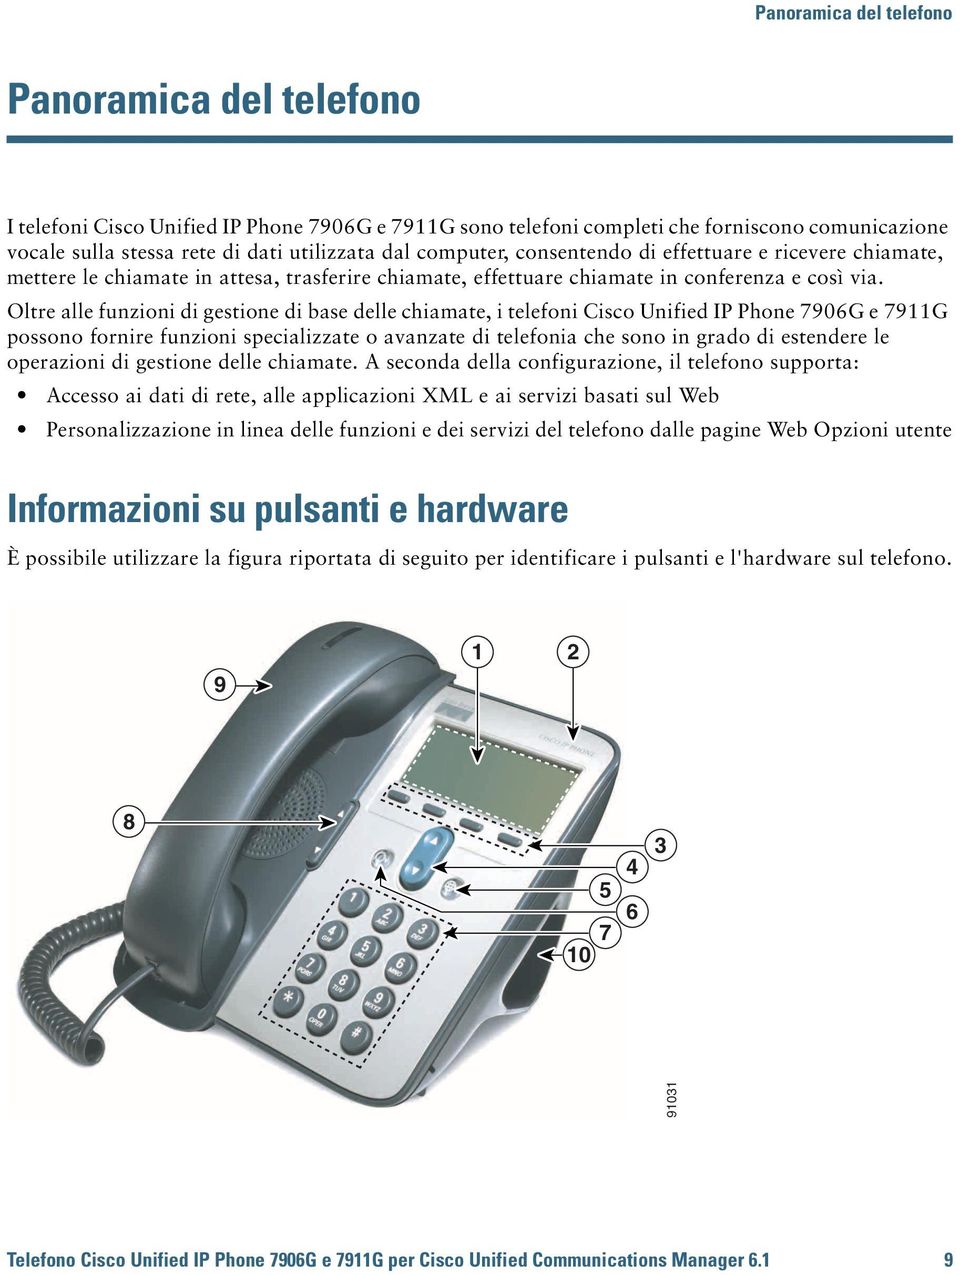 Oltre alle funzioni di gestione di base delle chiamate, i telefoni Cisco Unified IP Phone 7906G e 7911G possono fornire funzioni specializzate o avanzate di telefonia che sono in grado di estendere